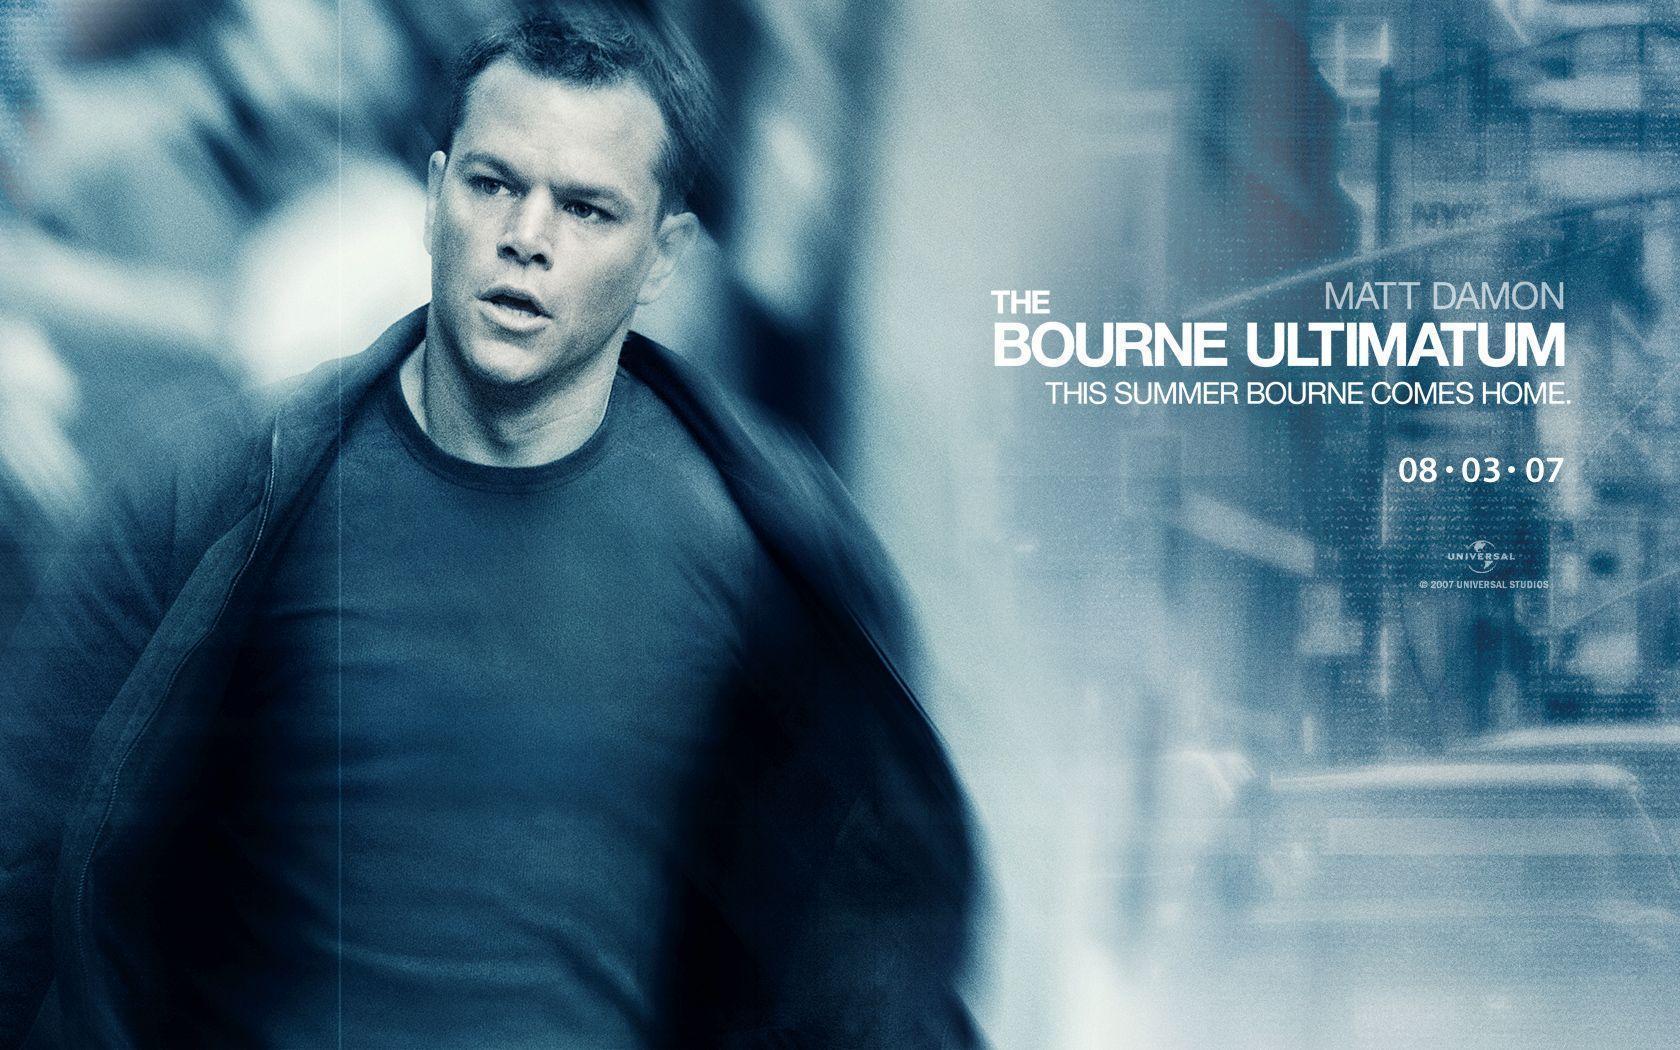 Matt Damon Damon in The Bourne Ultimatum Wallpaper 2 800x600